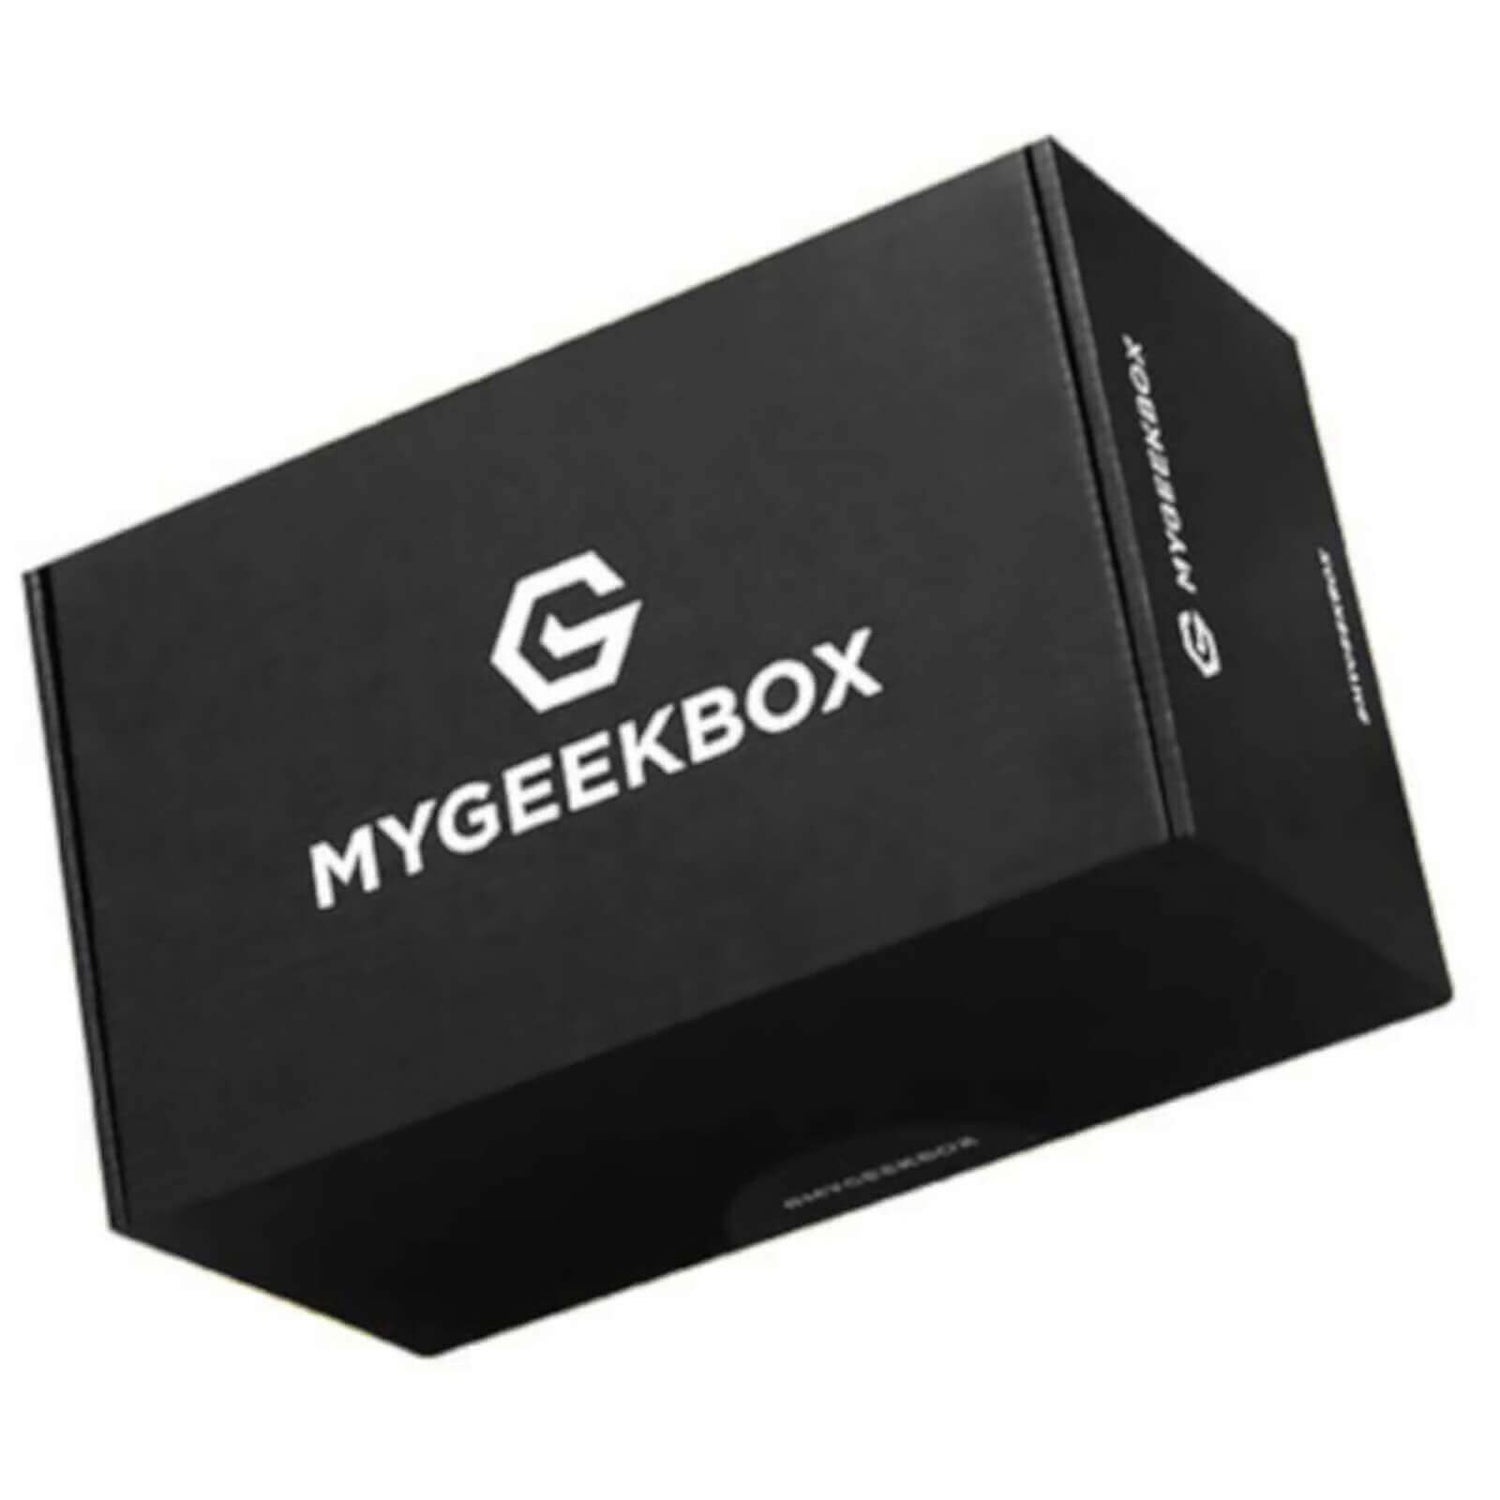 My Geek Box July 2020